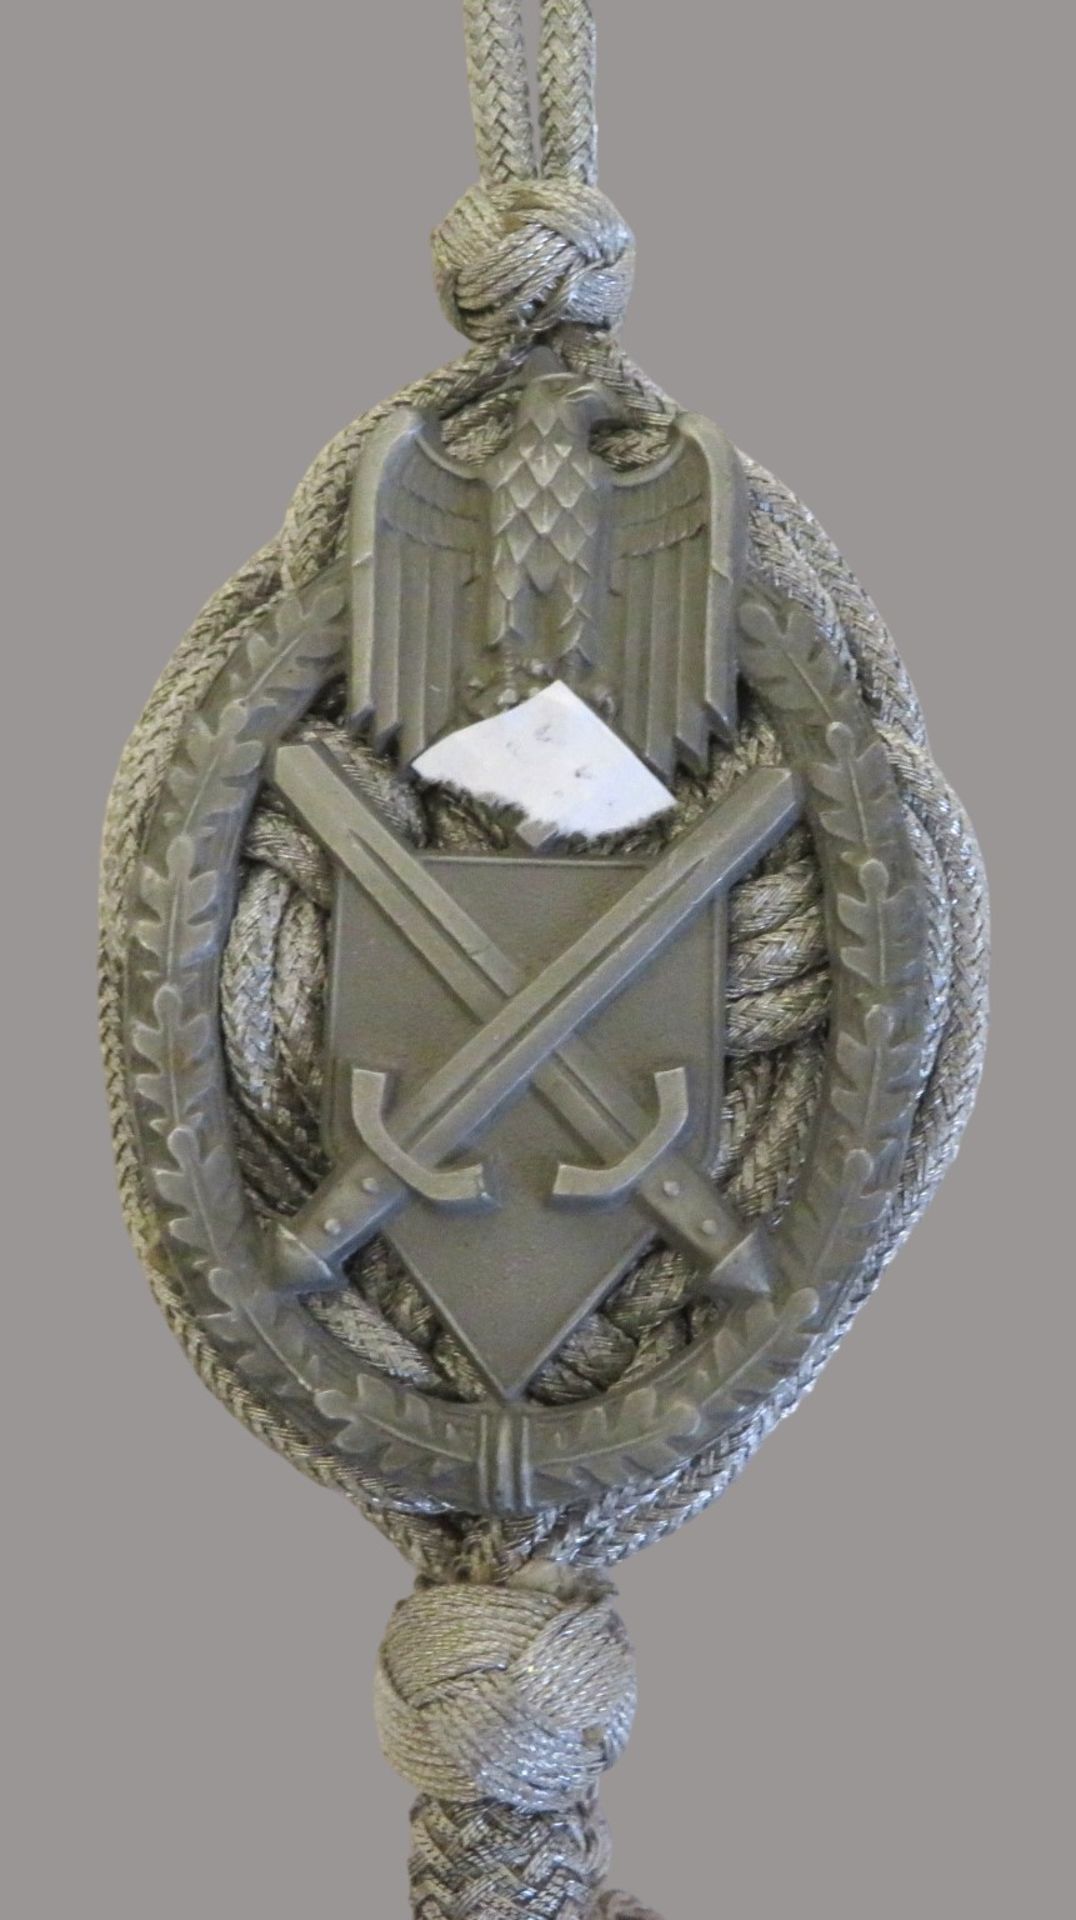 Schützenschnur, 2. Weltkrieg, l 41 cm, d 4,5 cm. - Image 2 of 2